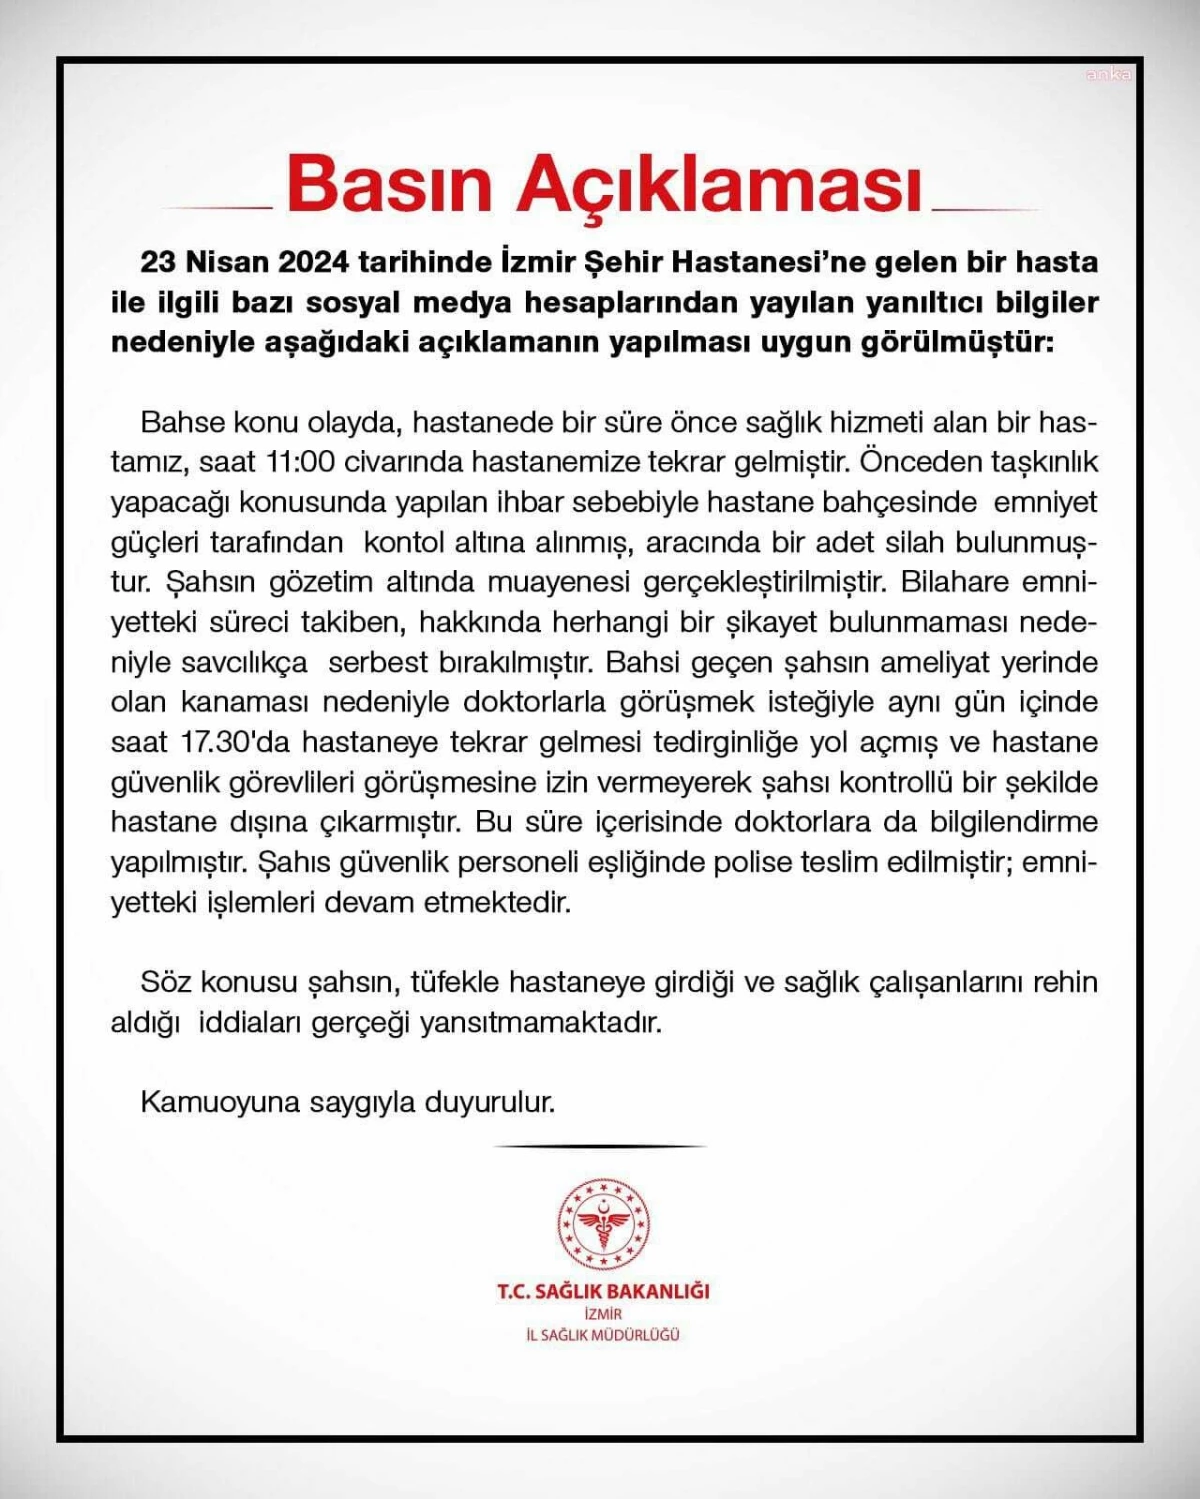 İzmir Şehir Hastanesi\'ne silahlı saldırı iddiaları gerçeği yansıtmıyor